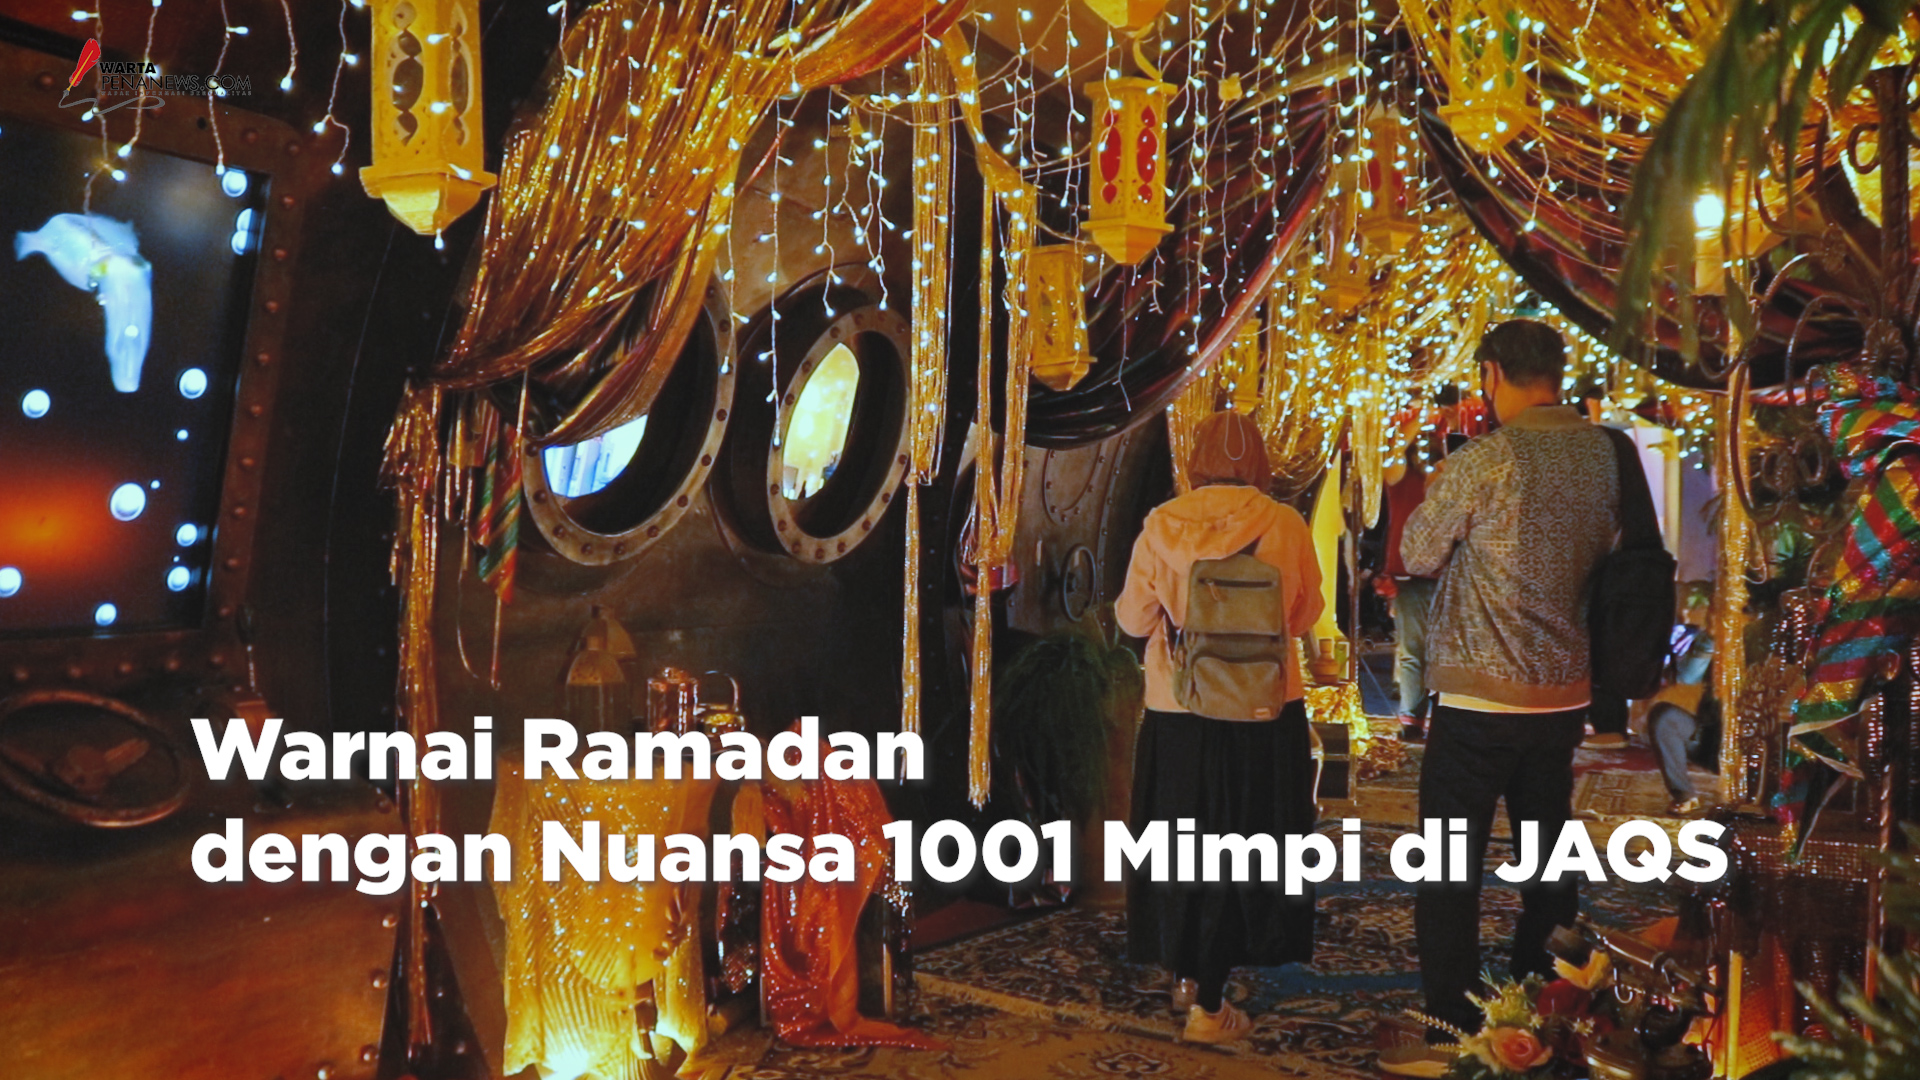 Warnai Ramadan dengan Nuansa 1001 Mimpi di JAQS